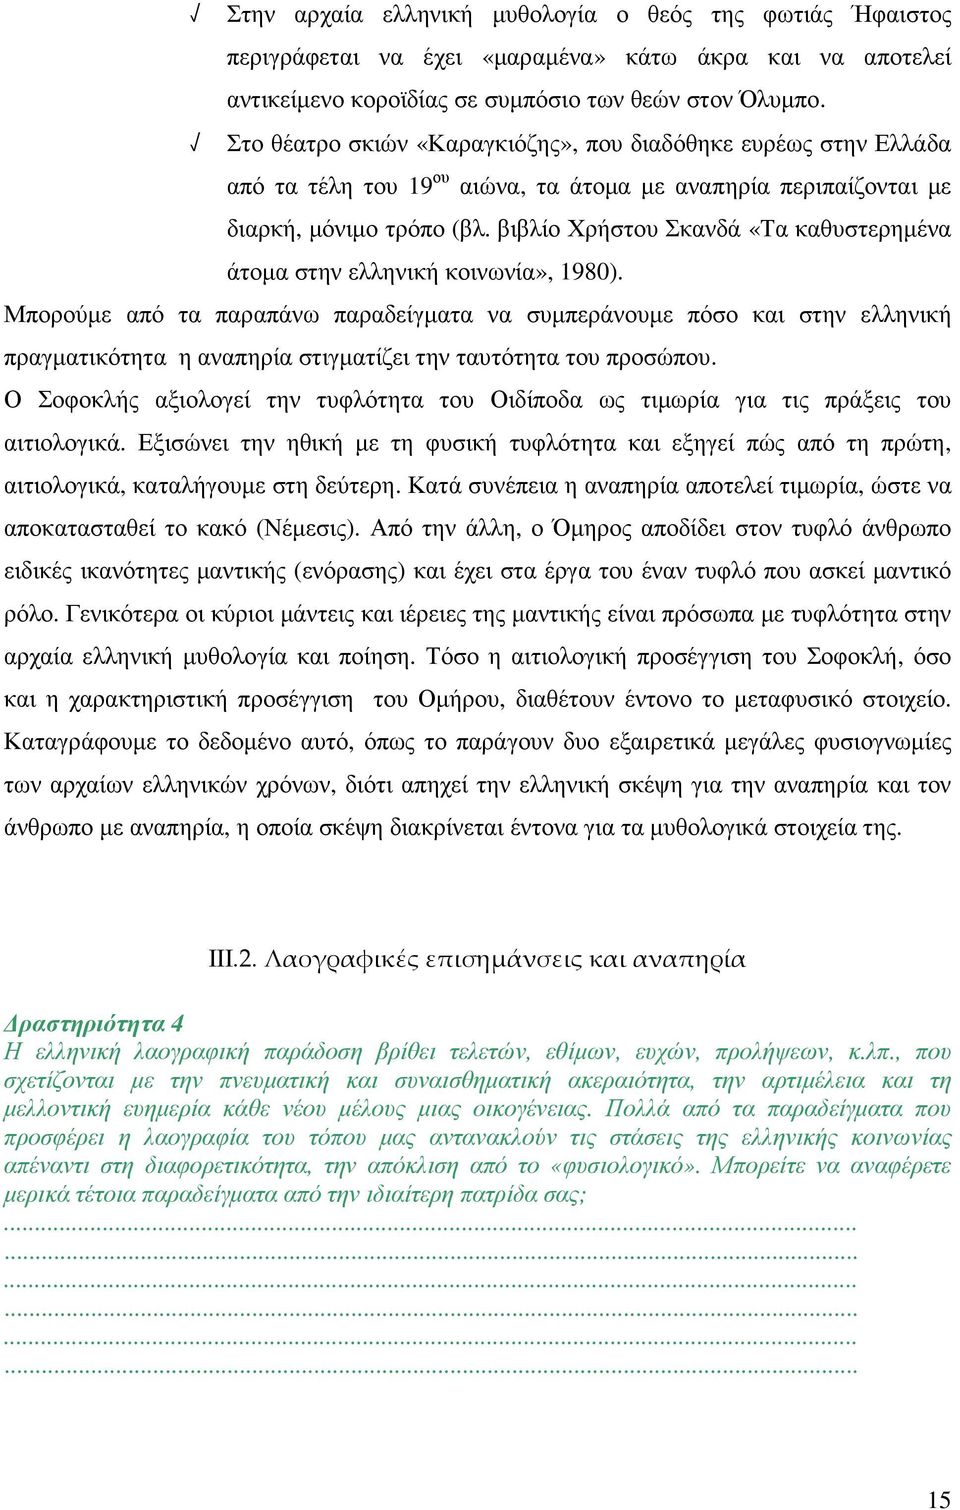 βιβλίο Χρήστου Σκανδά «Τα καθυστερηµένα άτοµα στην ελληνική κοινωνία», 1980).